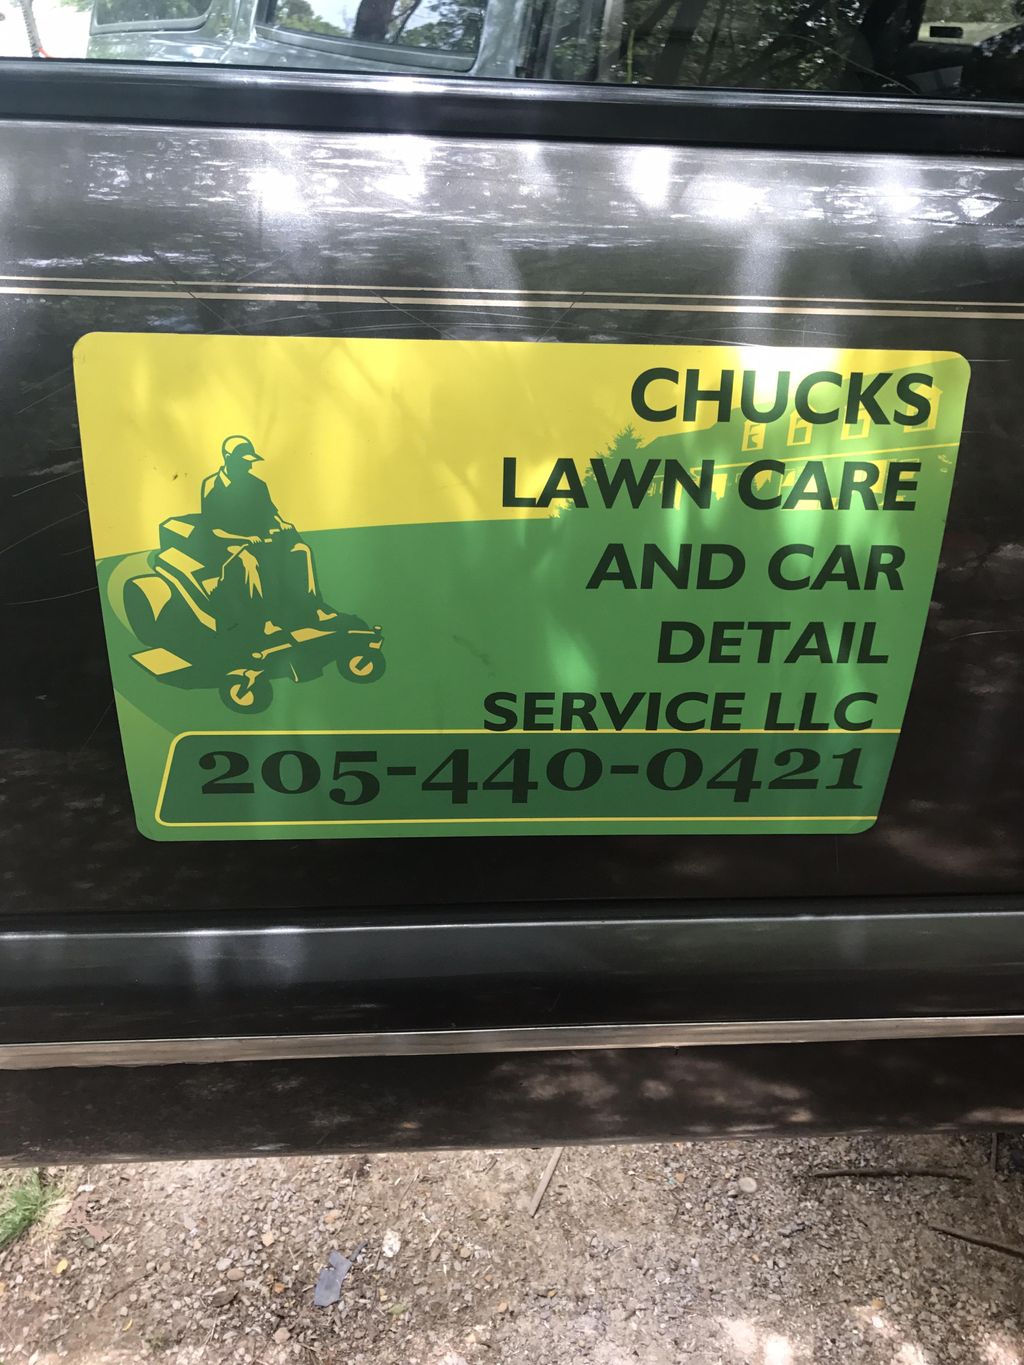 Chucks lawn care and car detail services llc